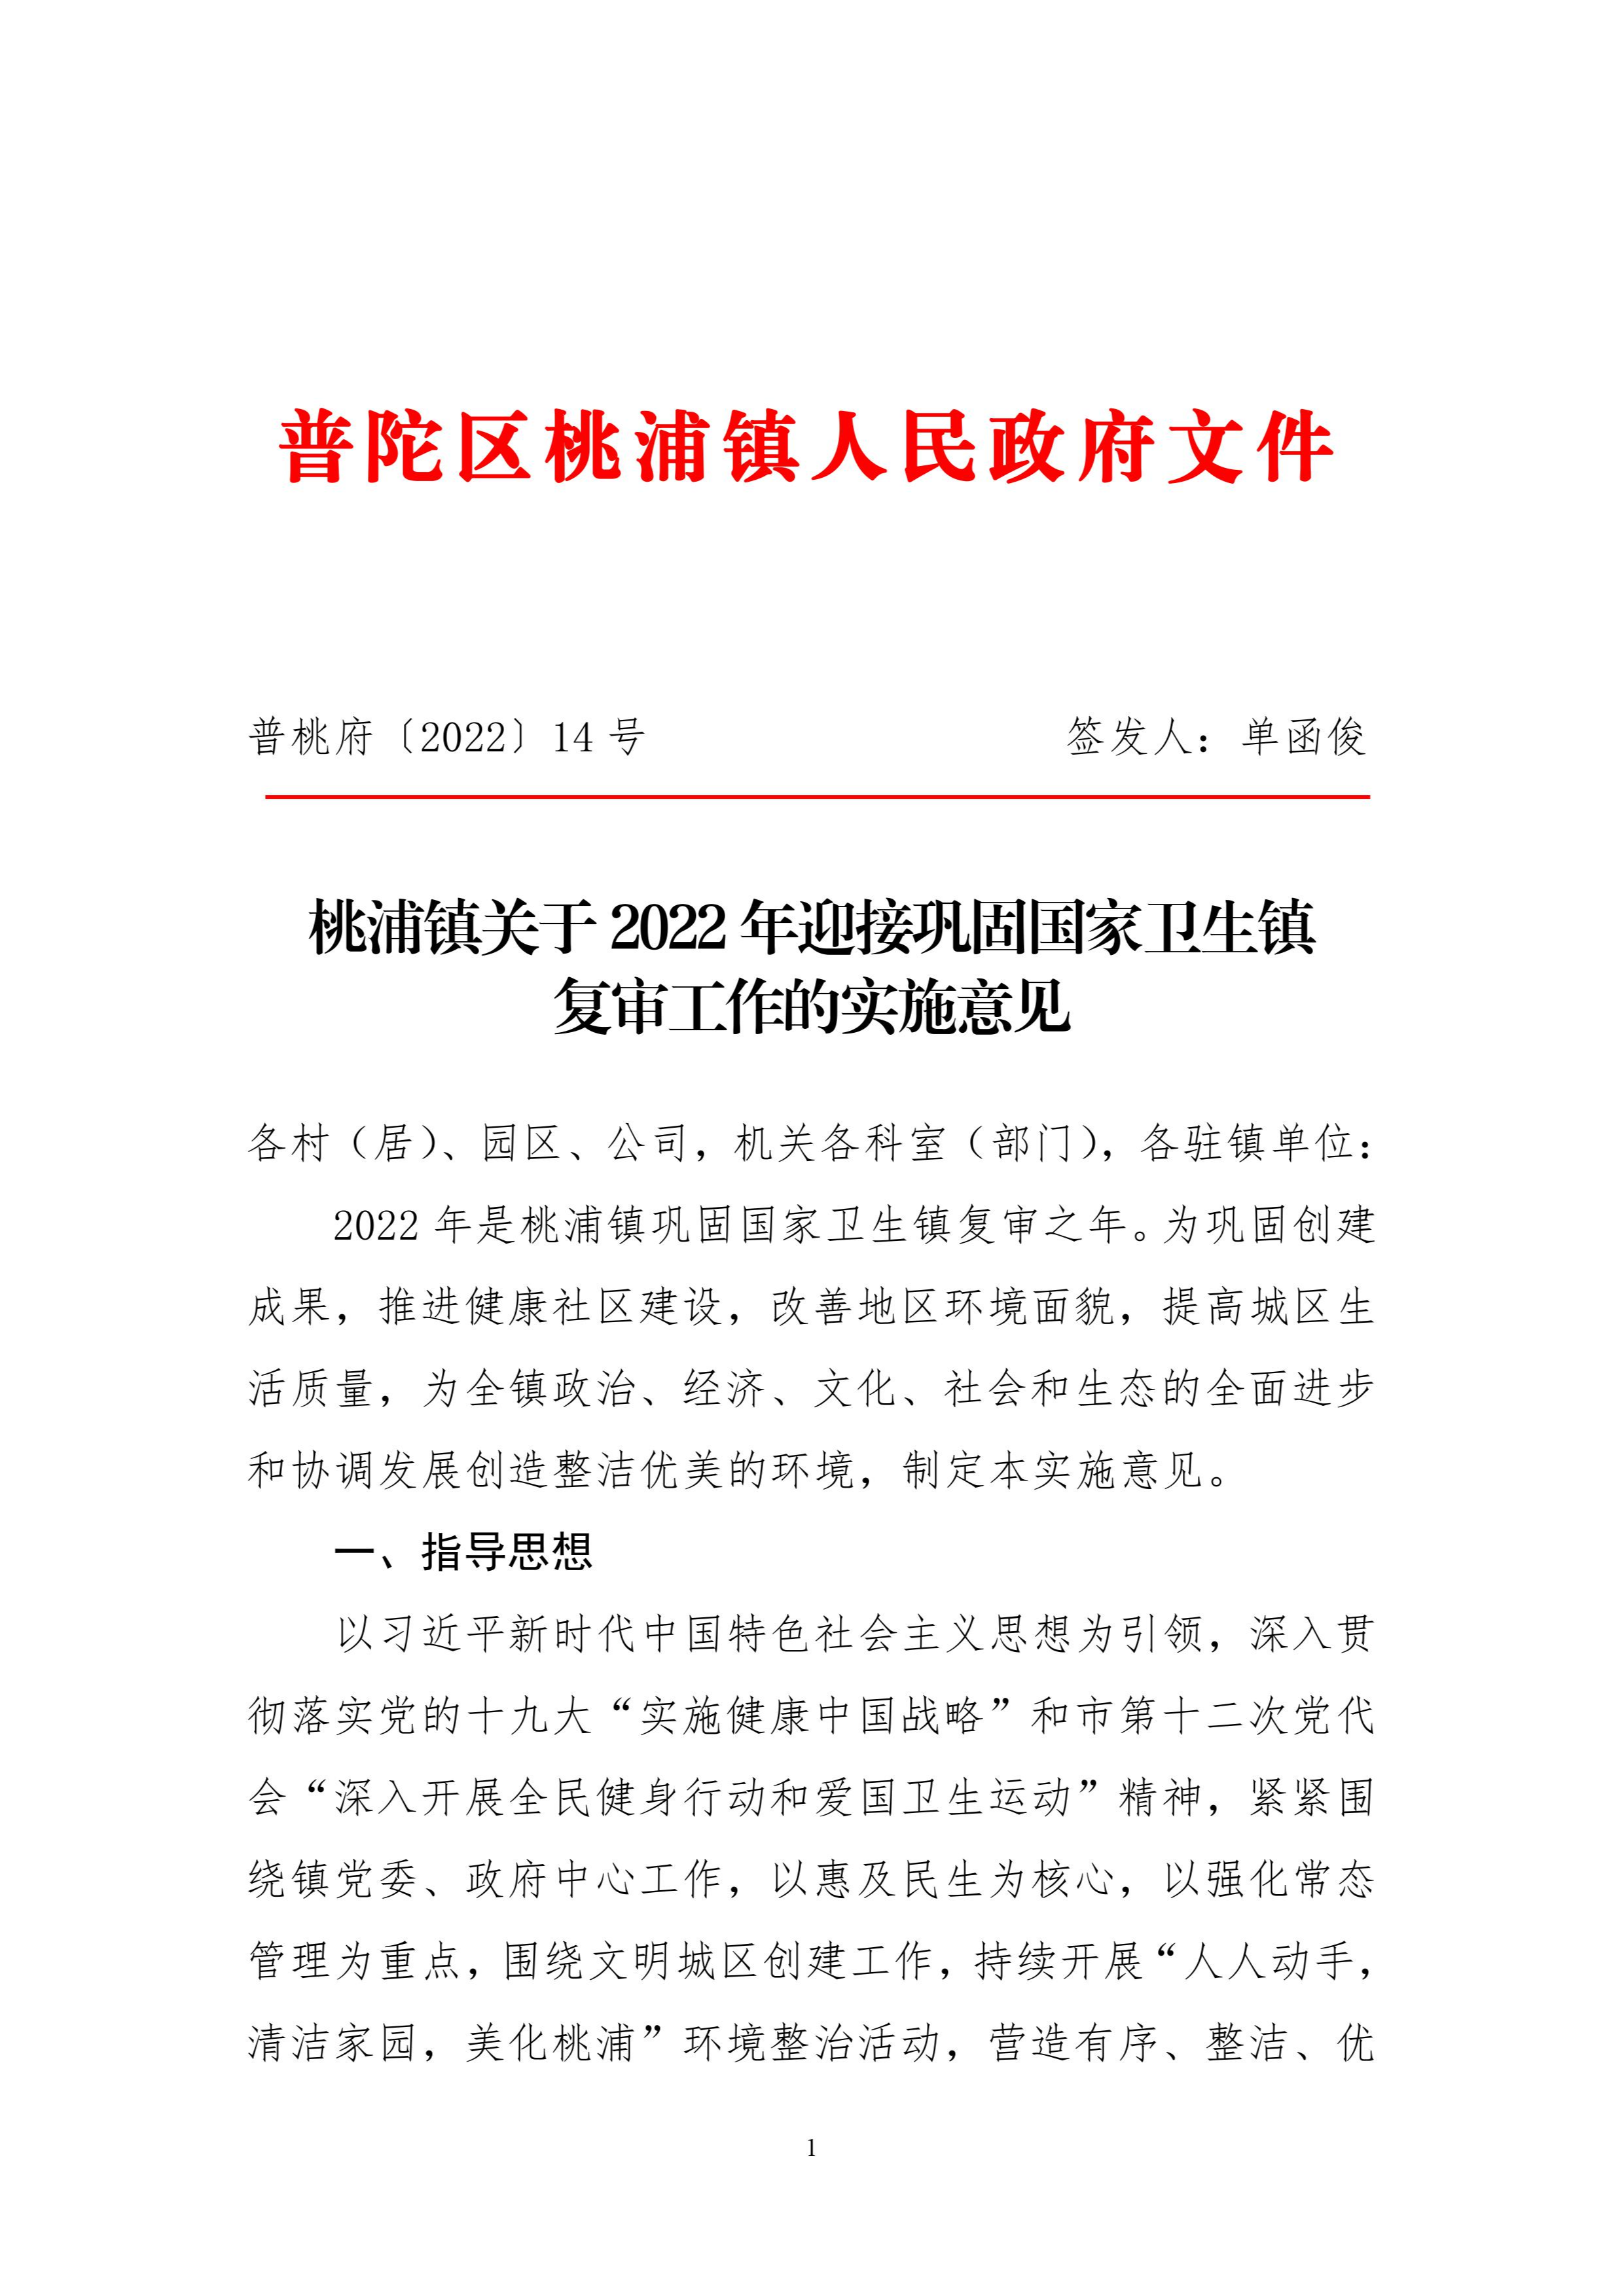 桃浦镇关于2022年迎接巩固国家卫生镇复审工作的实施意见